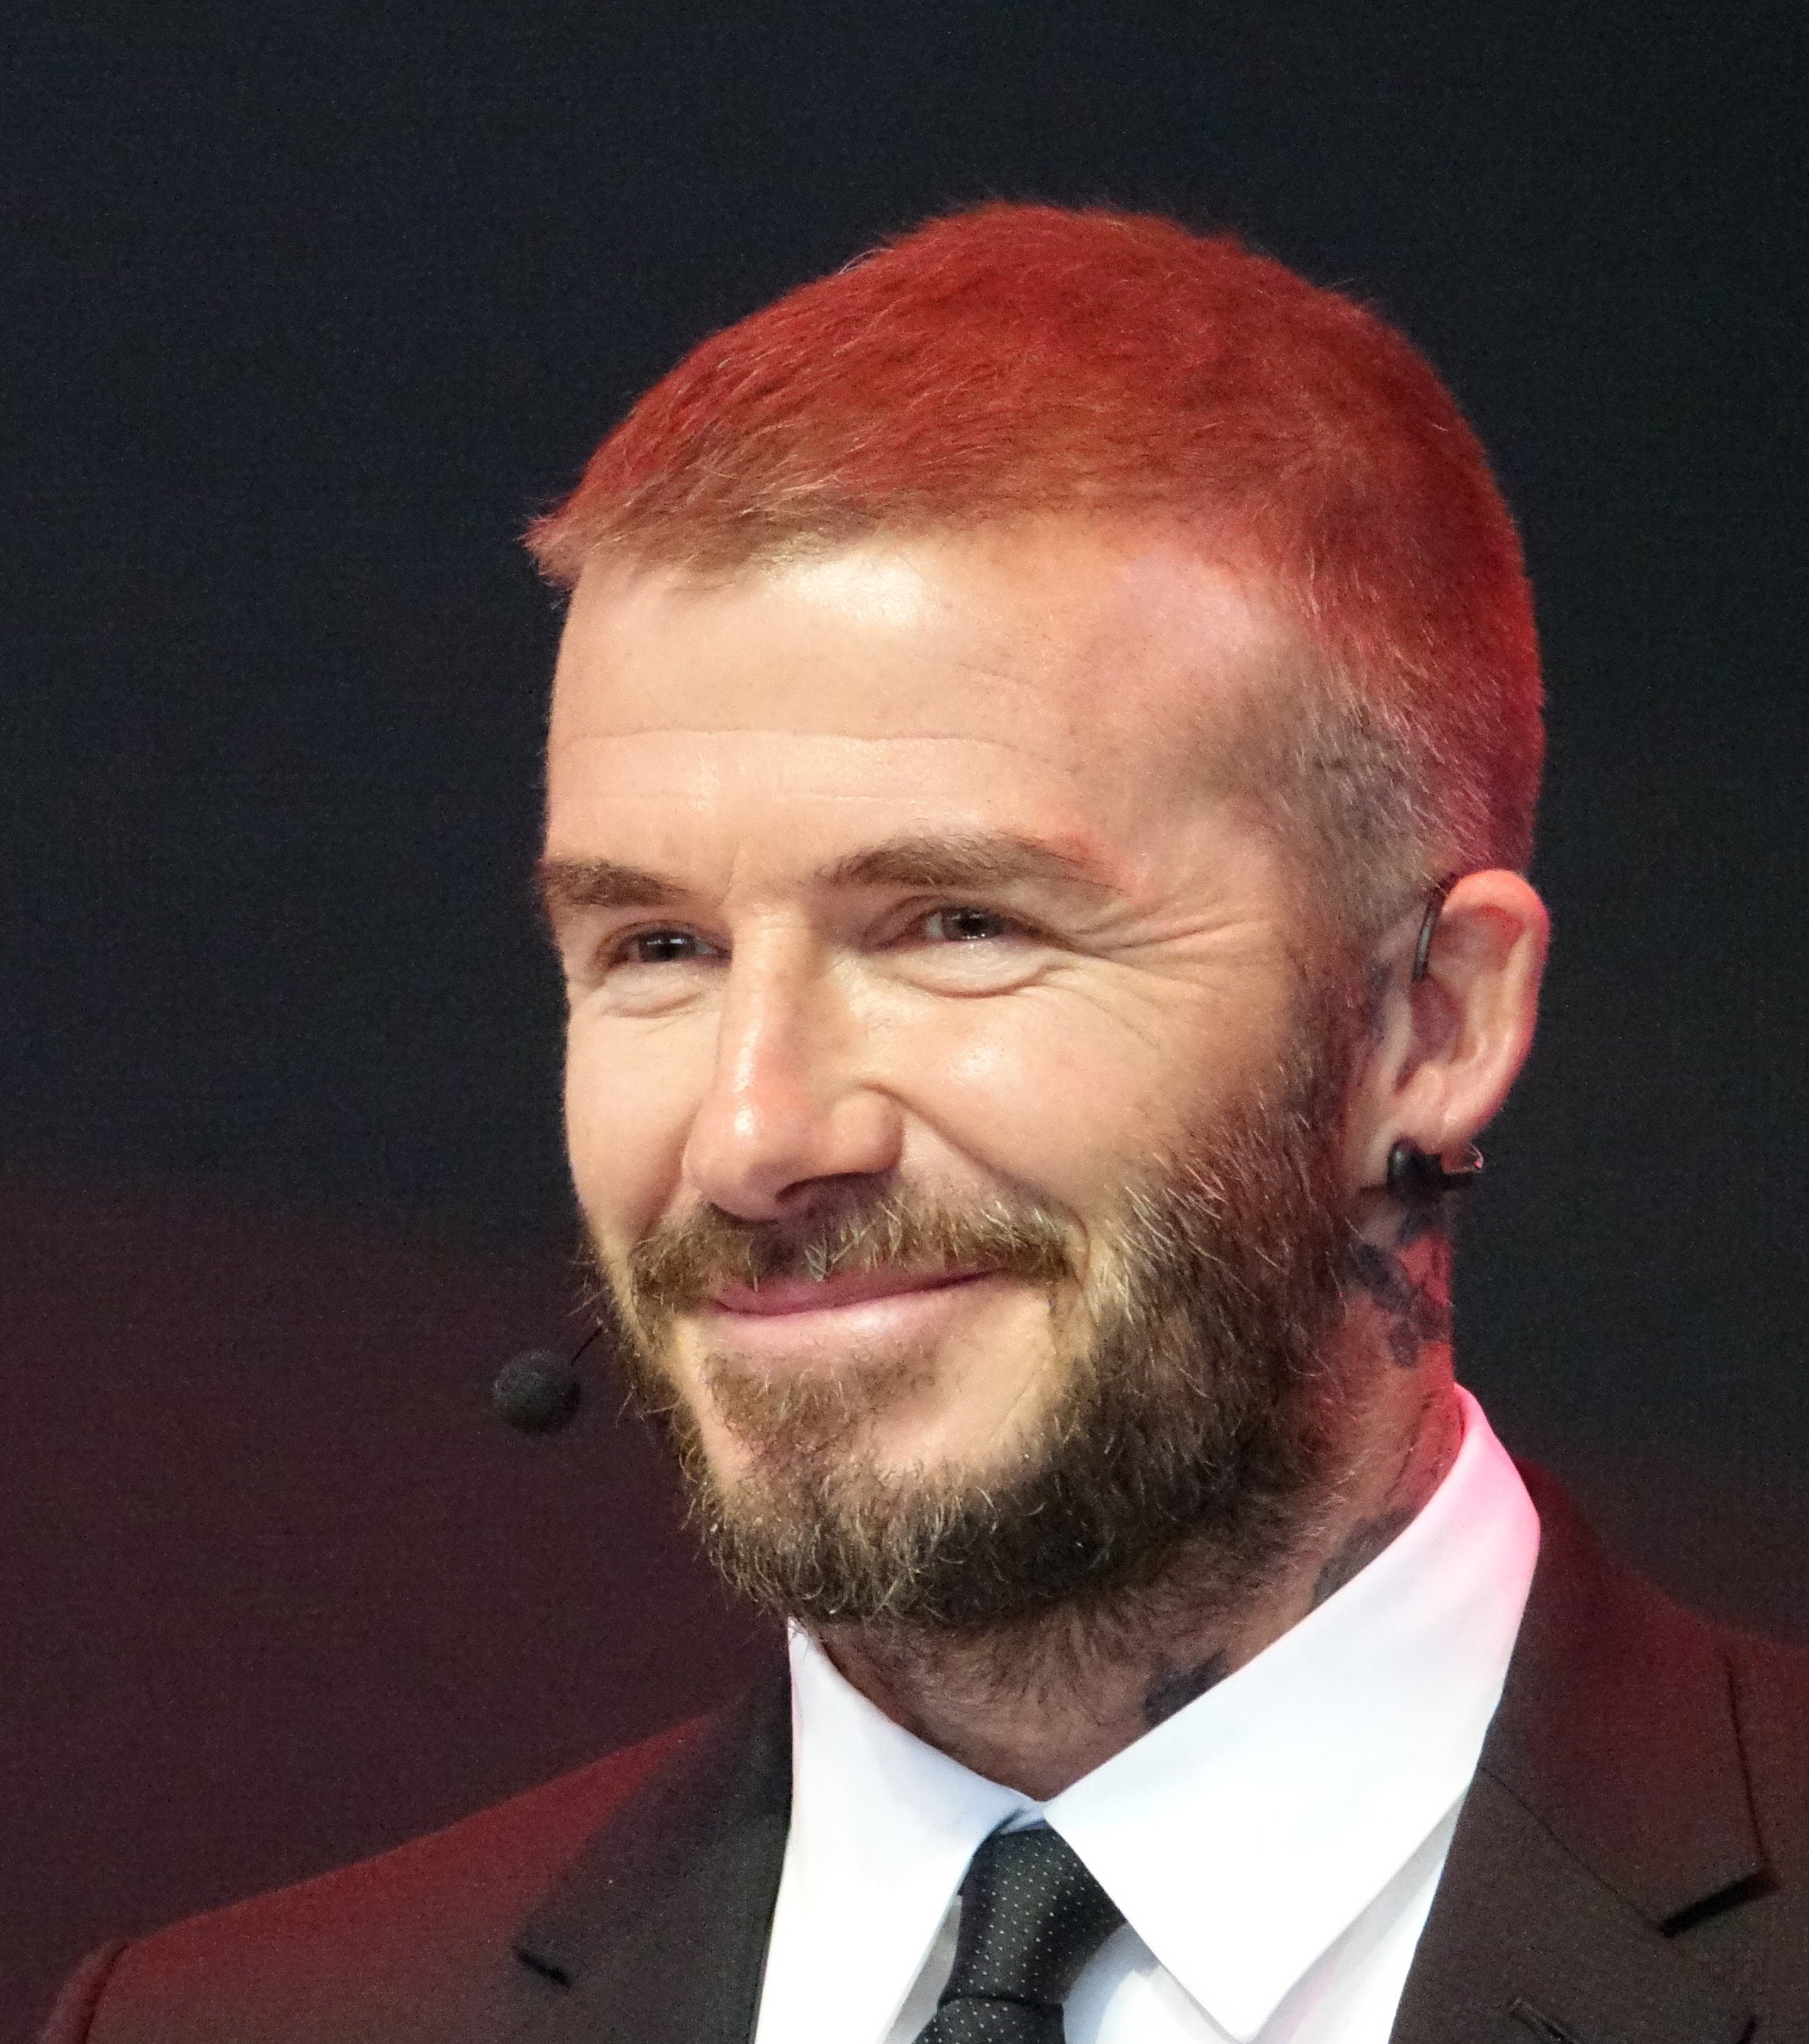 David Beckham usando roupas sociais e um microfone.